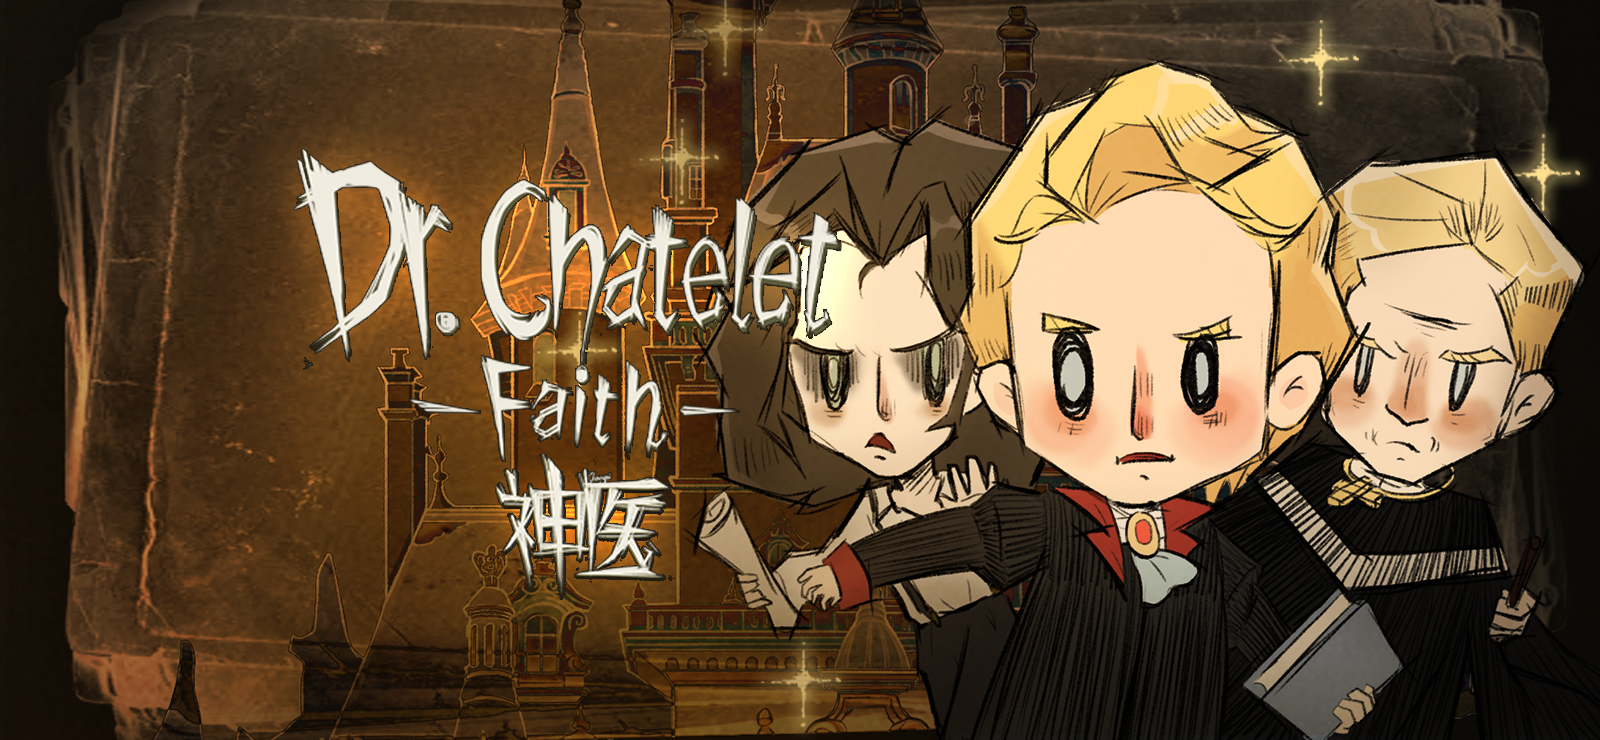 Dr. Chatelet: Faith 神医